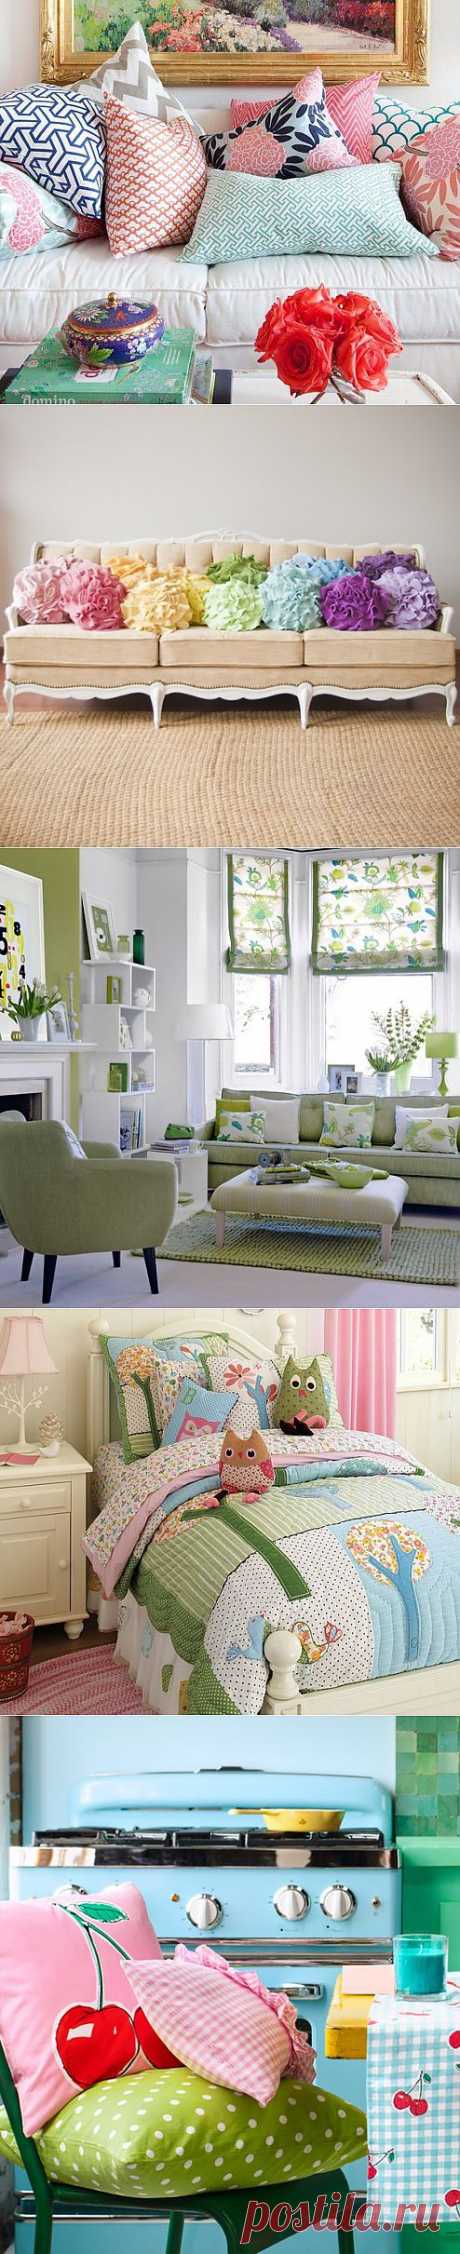 10 советов как украсить интерьер с помощью декоративных подушек | Дизайн интерьера | Декор своими руками